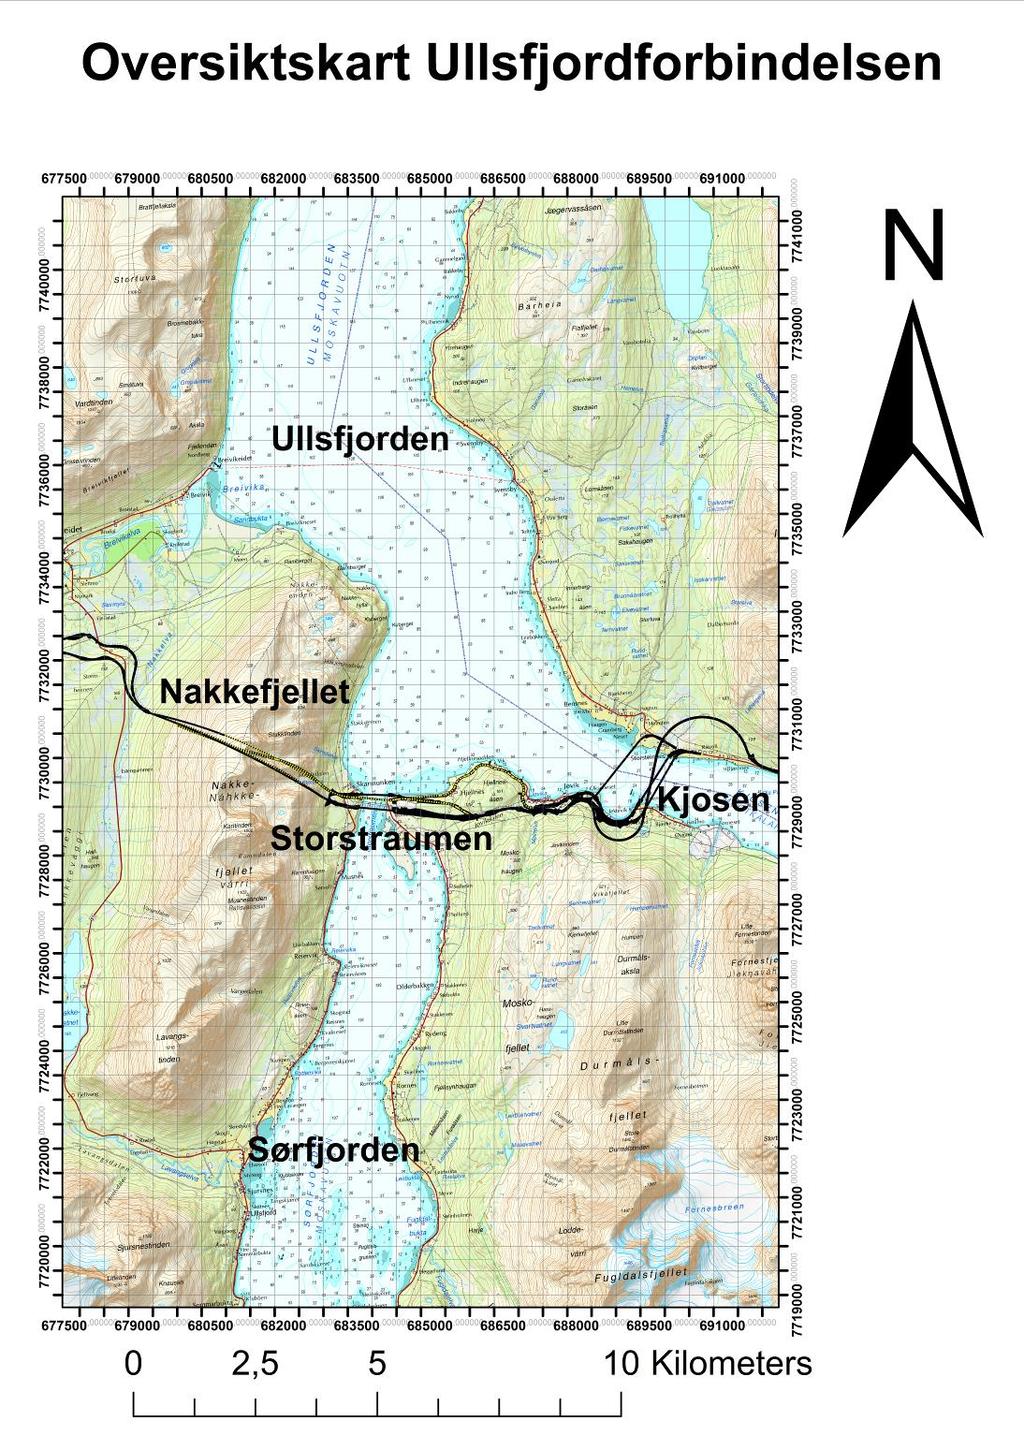 3 Områdebeskrivelse 3.1 Oversikt Det geografiske området for denne oppgaven befinner seg ved Ullsfjorden øst i Tromsø kommune, Troms fylke.